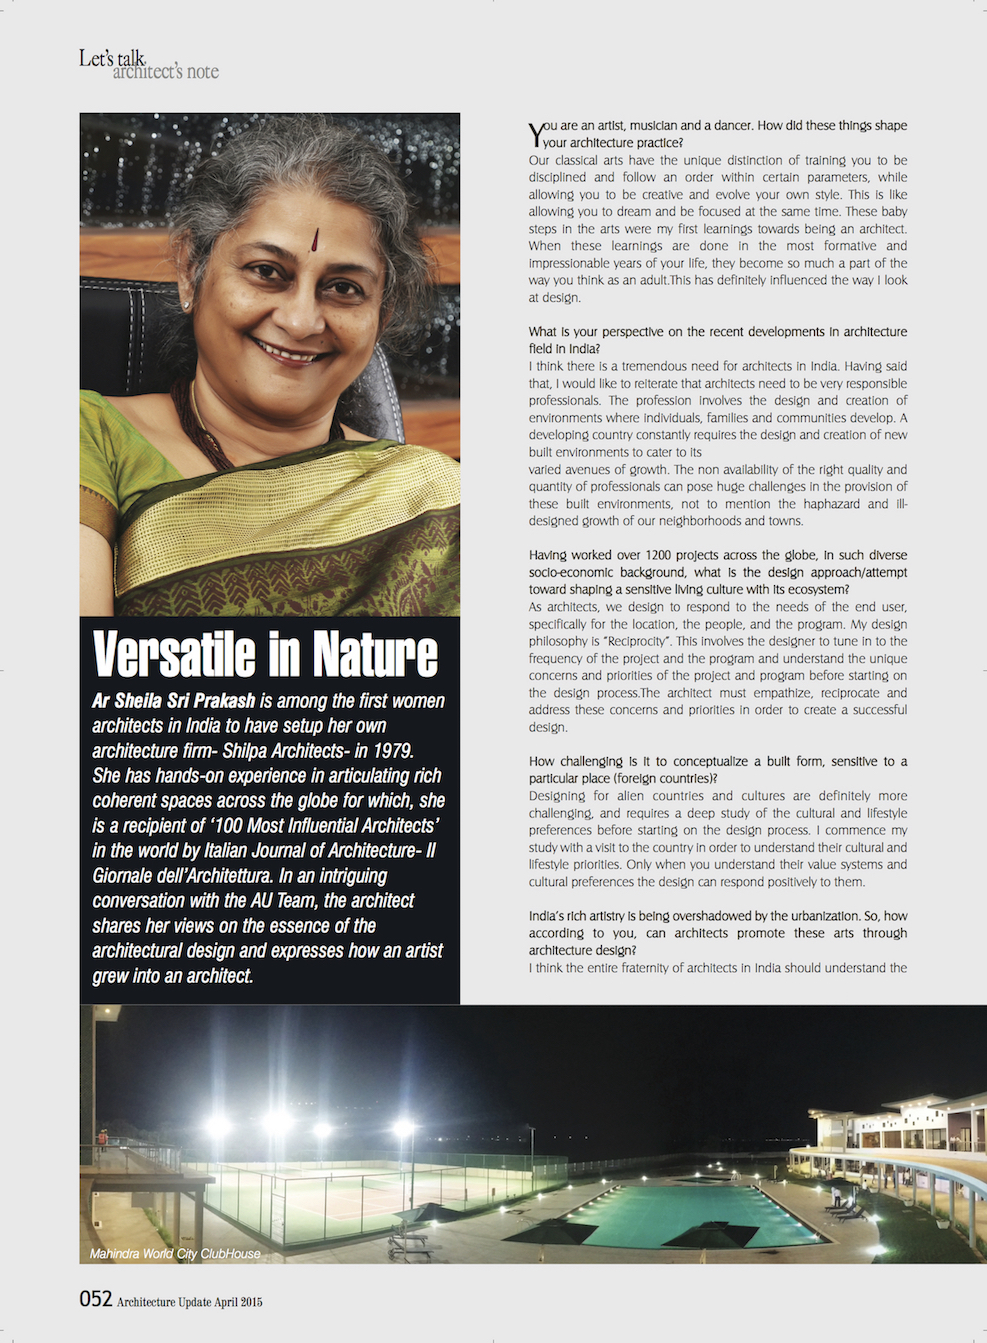 Architecture Update Magazine - Sheila Sri Prakash